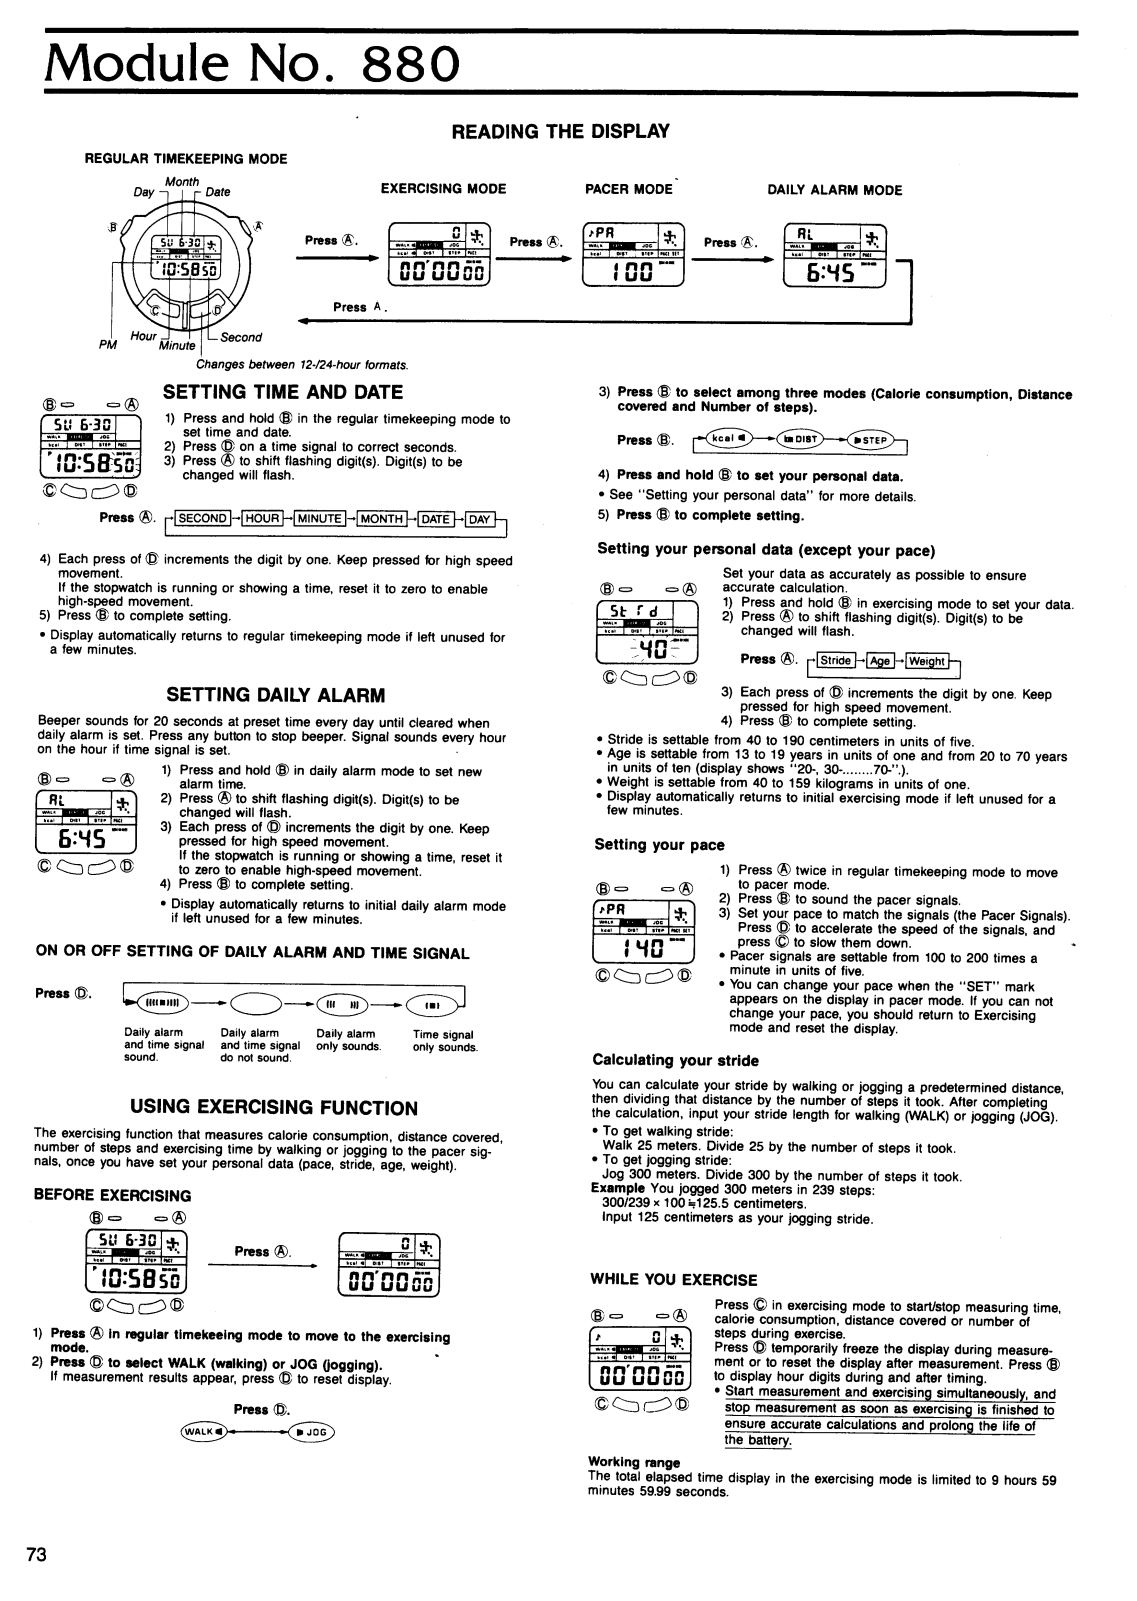 Casio QW-880 User Manual